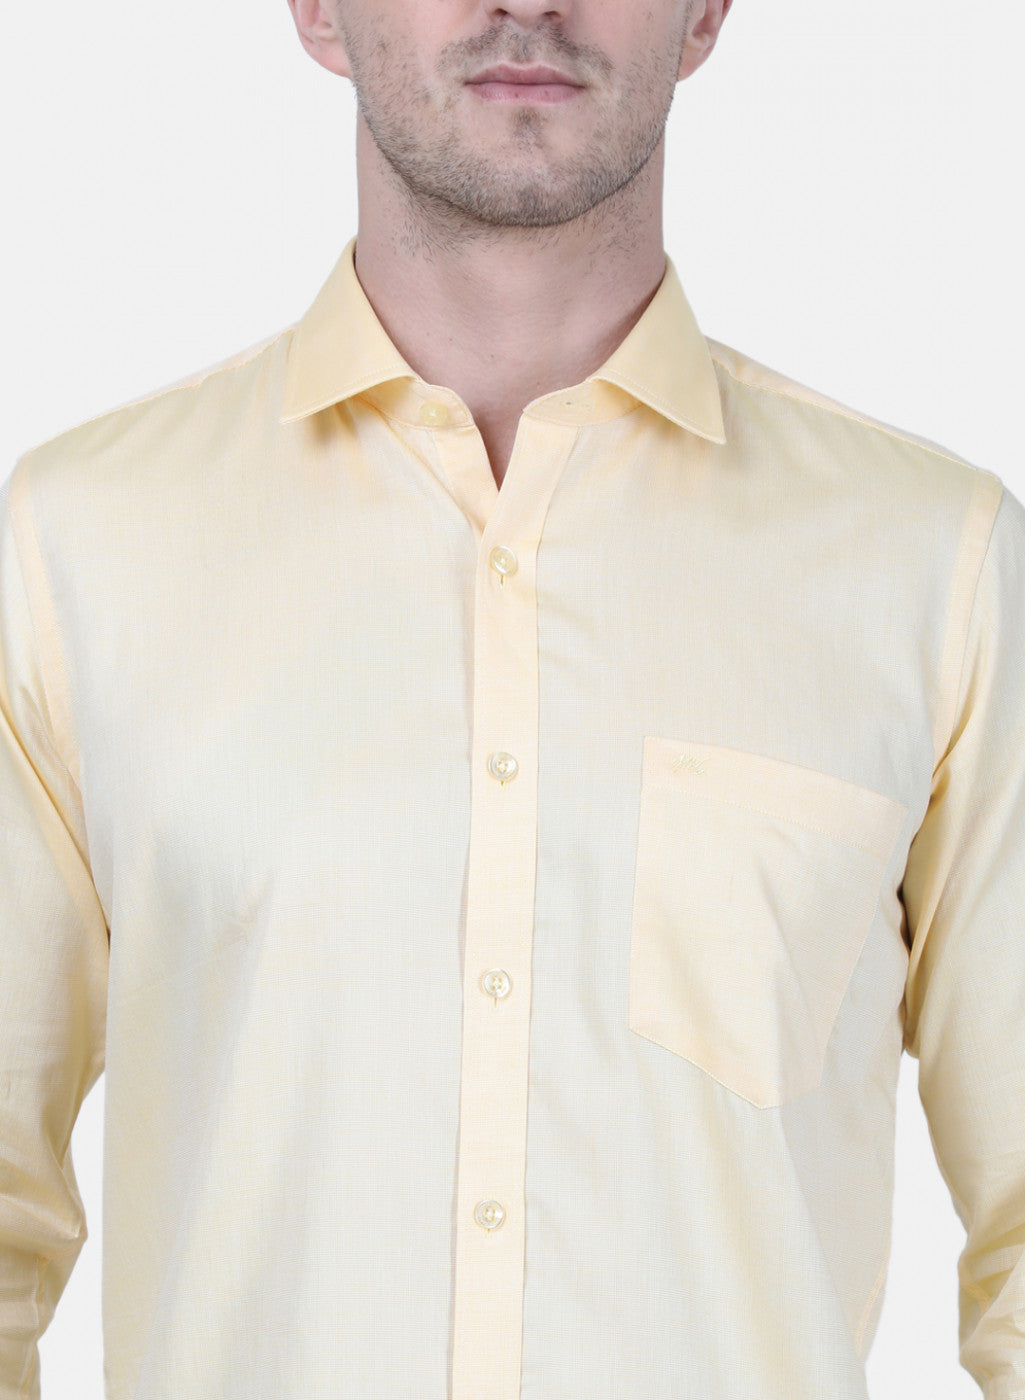 Mens Yellow Printed Shirt